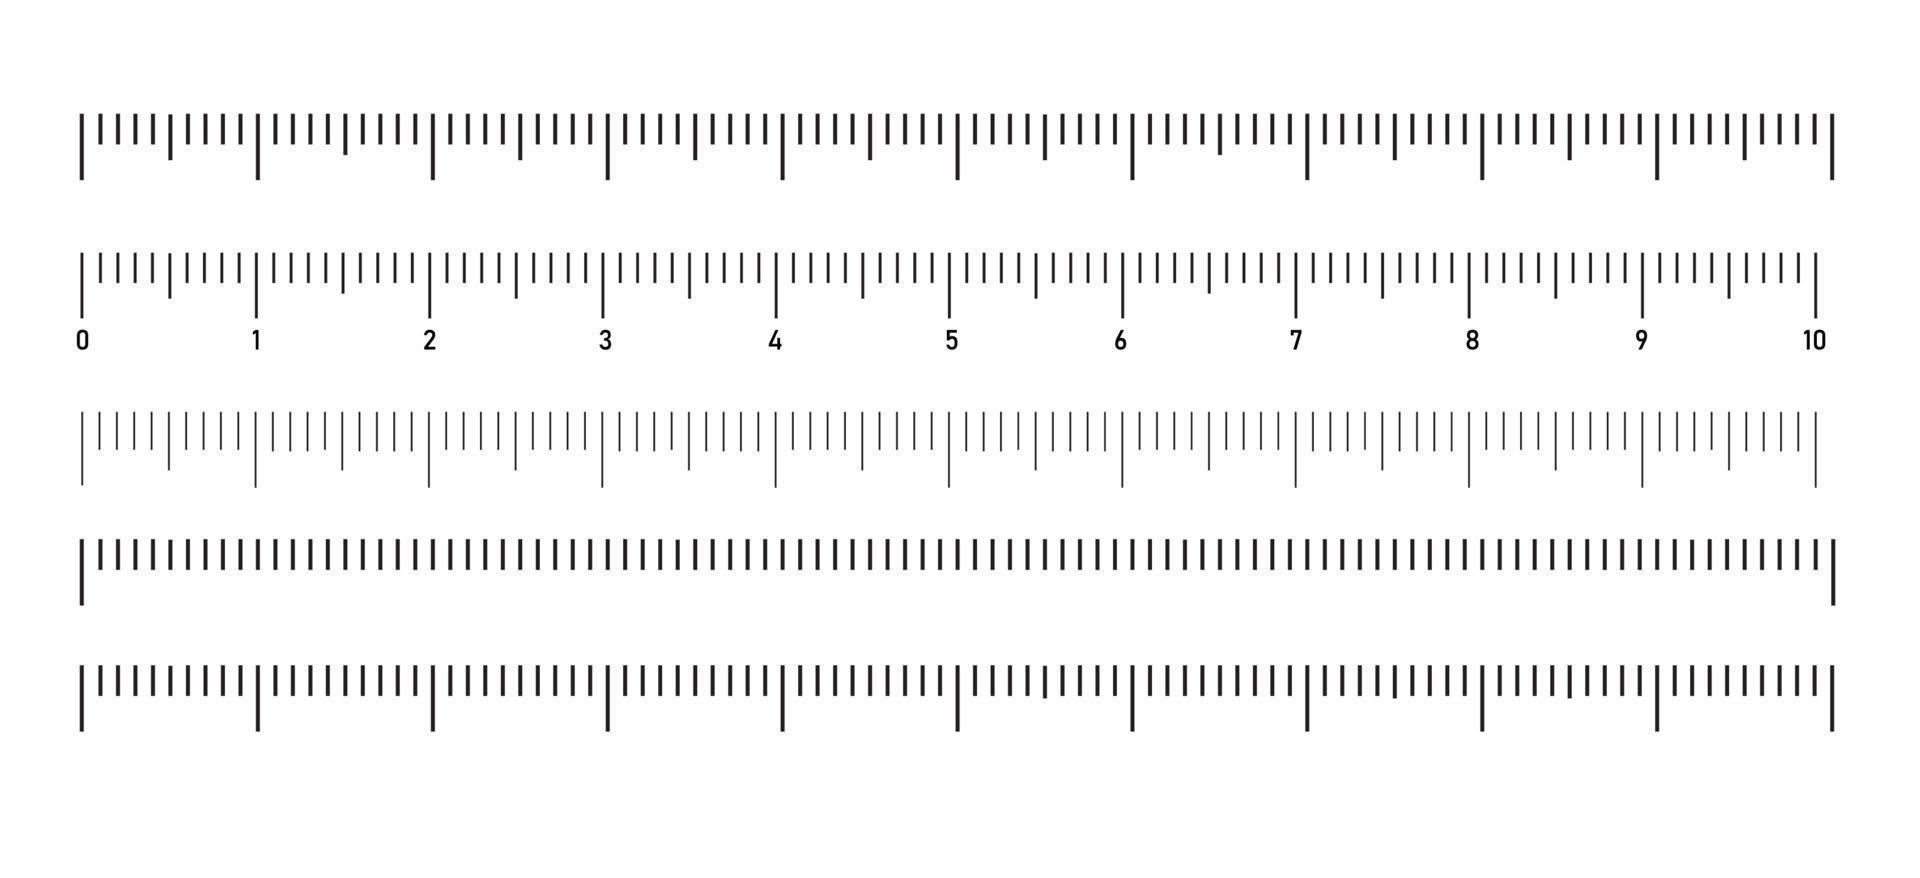 Escala de medición, marcado de 10 centímetros para reglas. ilustración vectorial en estilo plano aislado sobre fondo blanco. vector